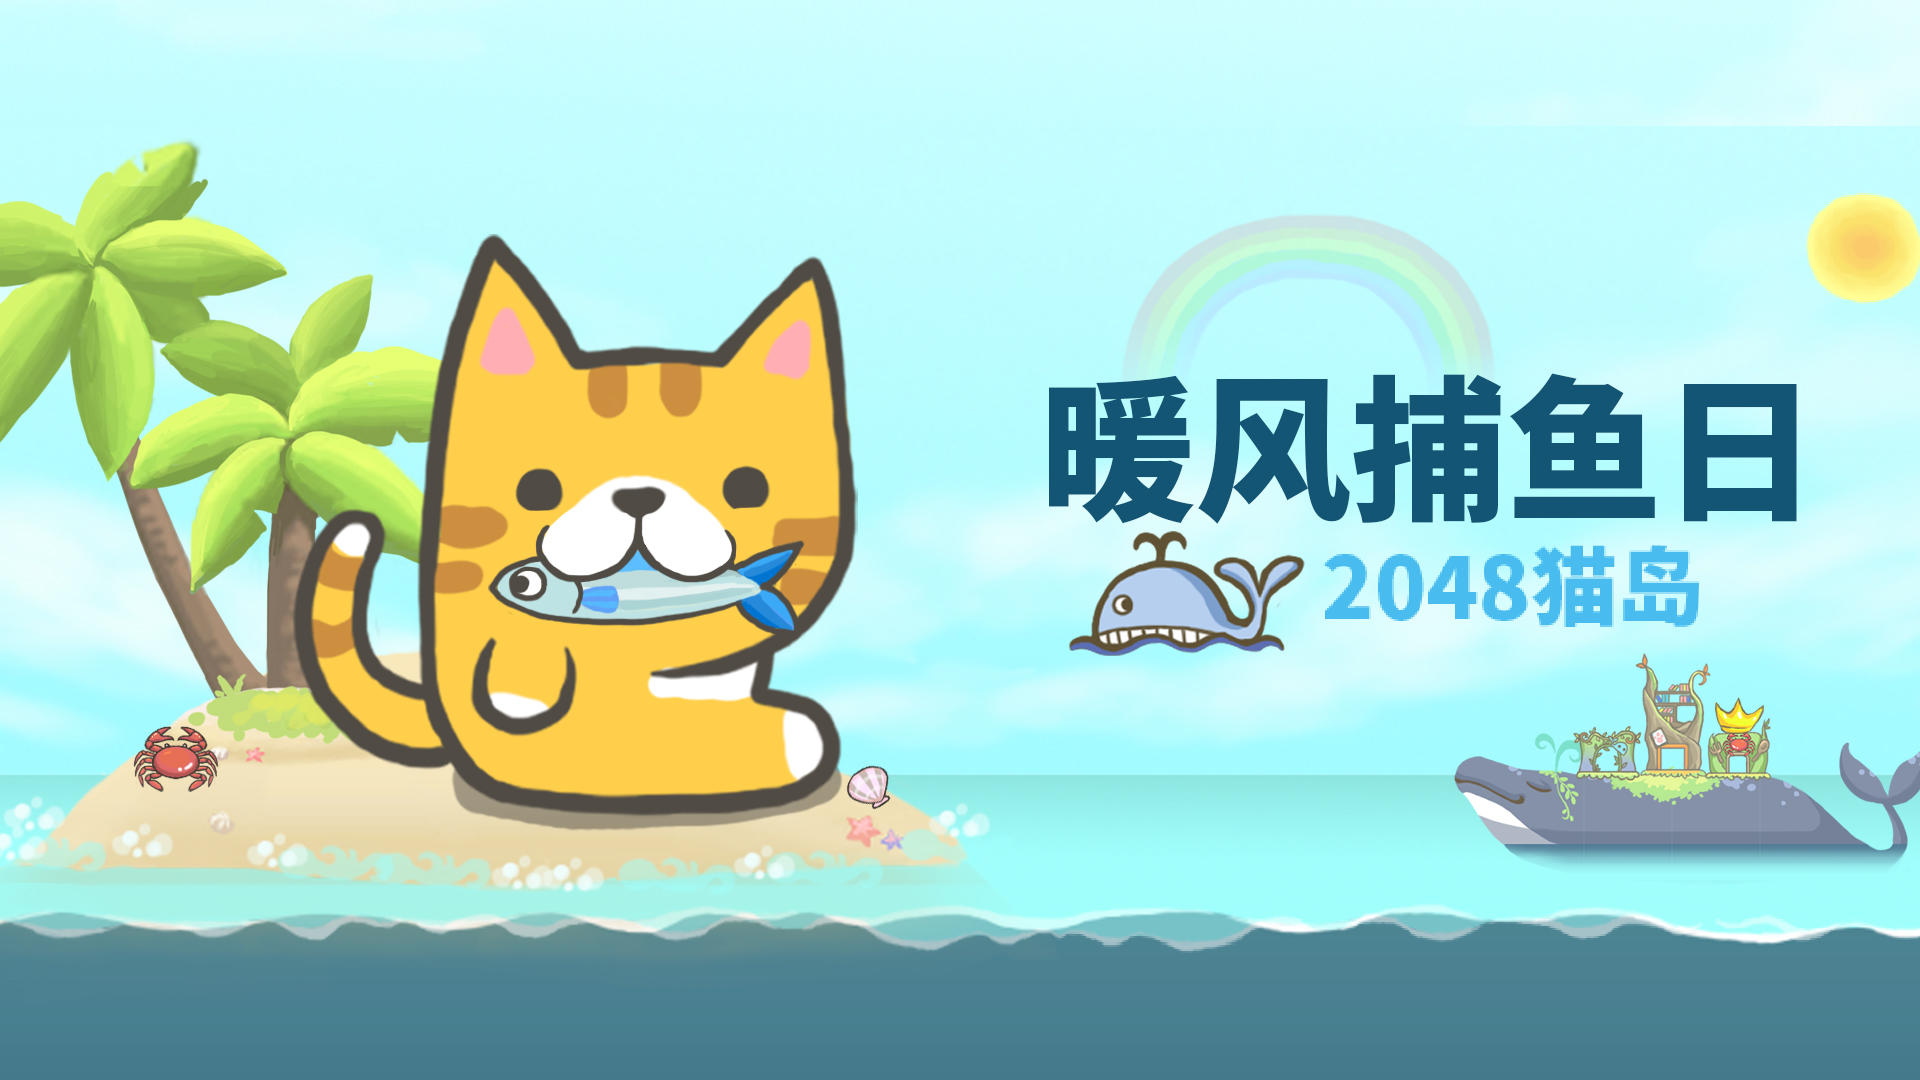 Banner of Journée de pêche par vent chaud : 2048 Cat Island 